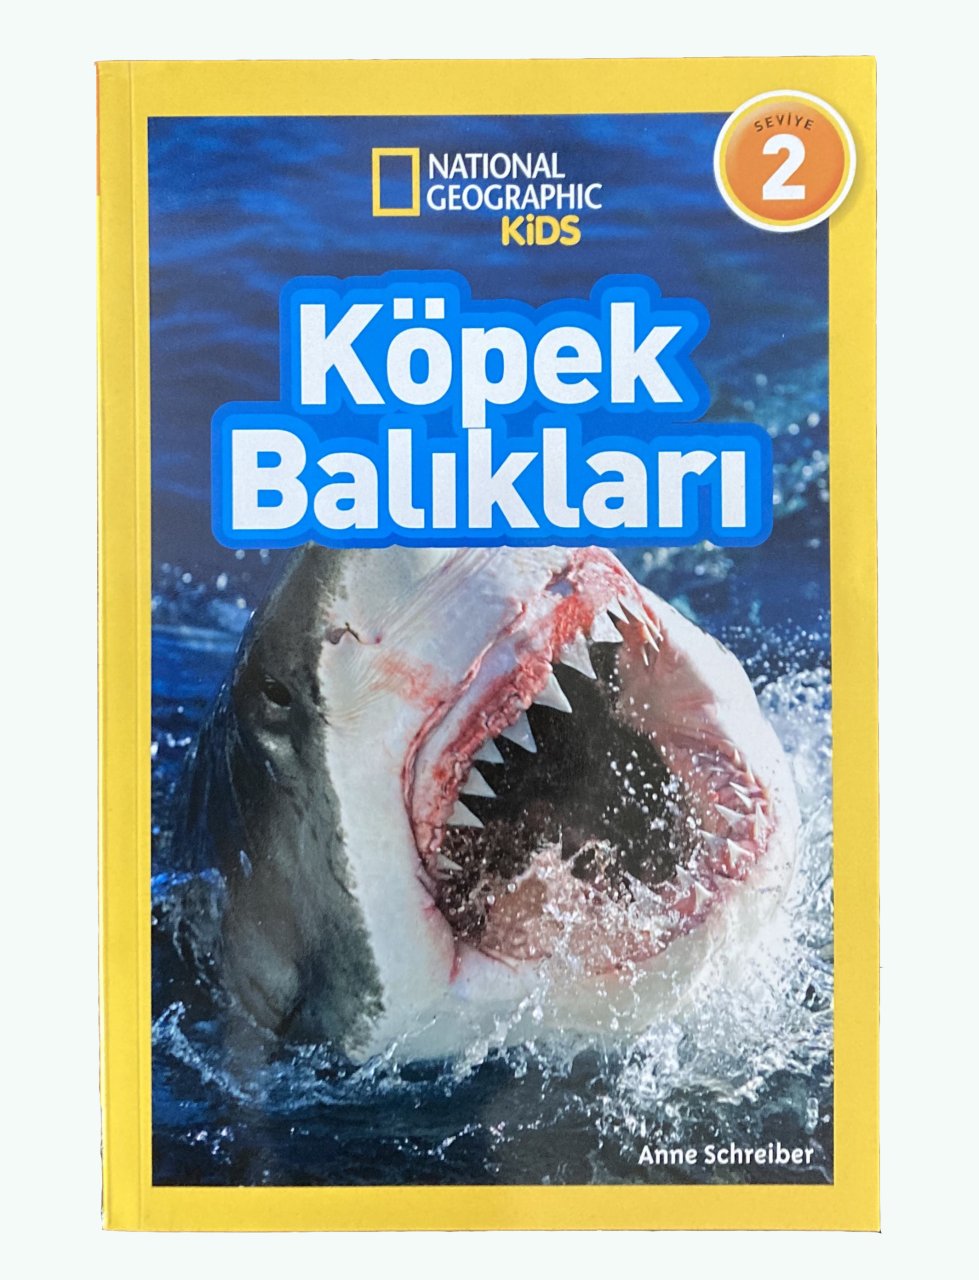 National Geographic Kids - Köpek Balıkları*